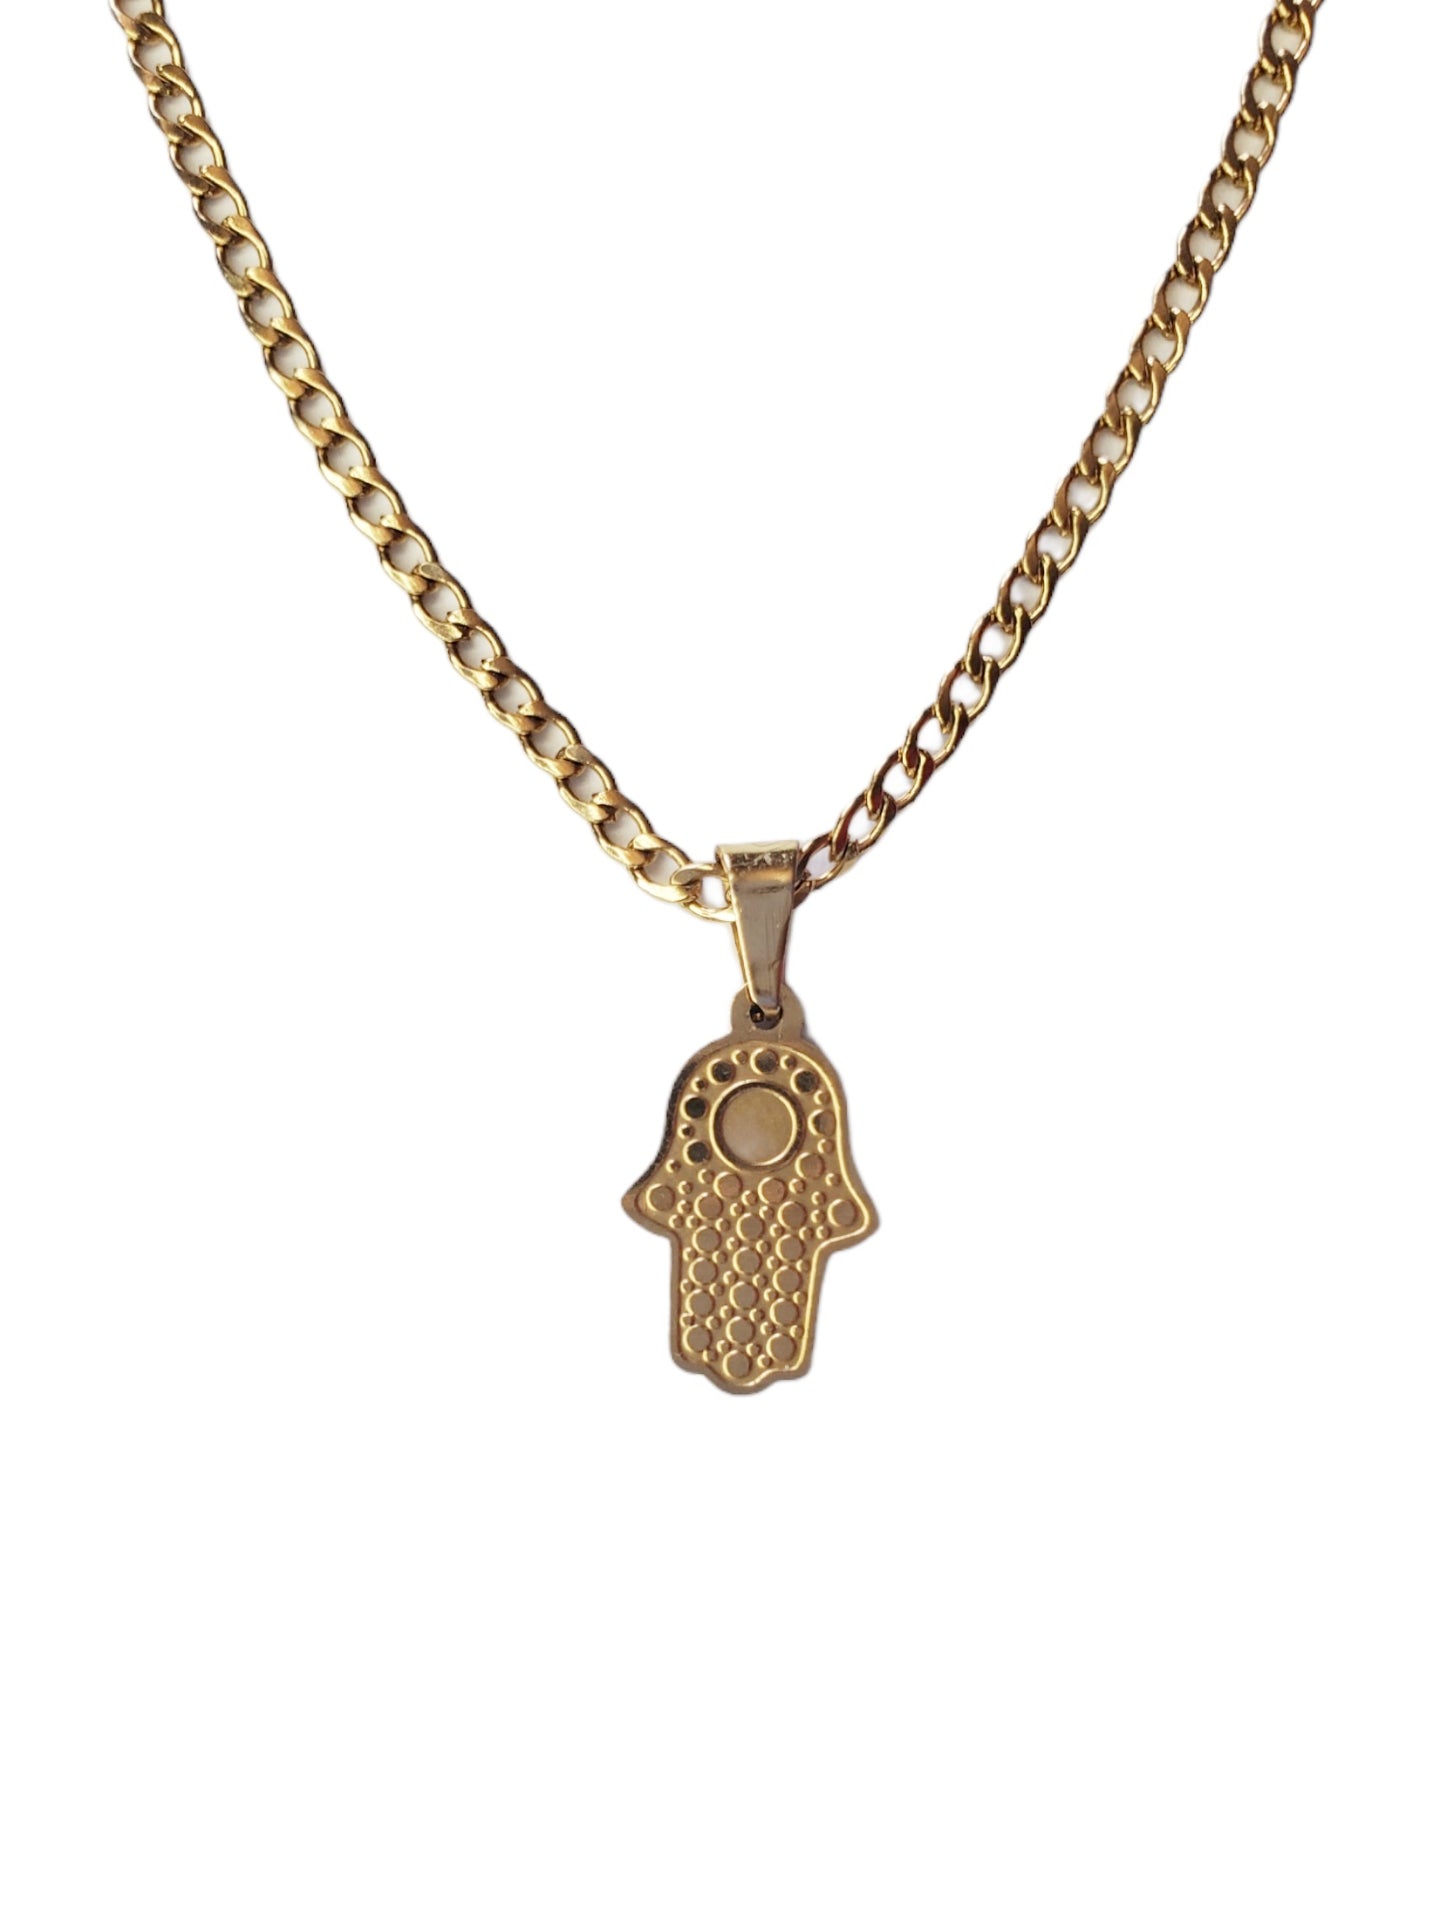 Hamsa necklace ✋